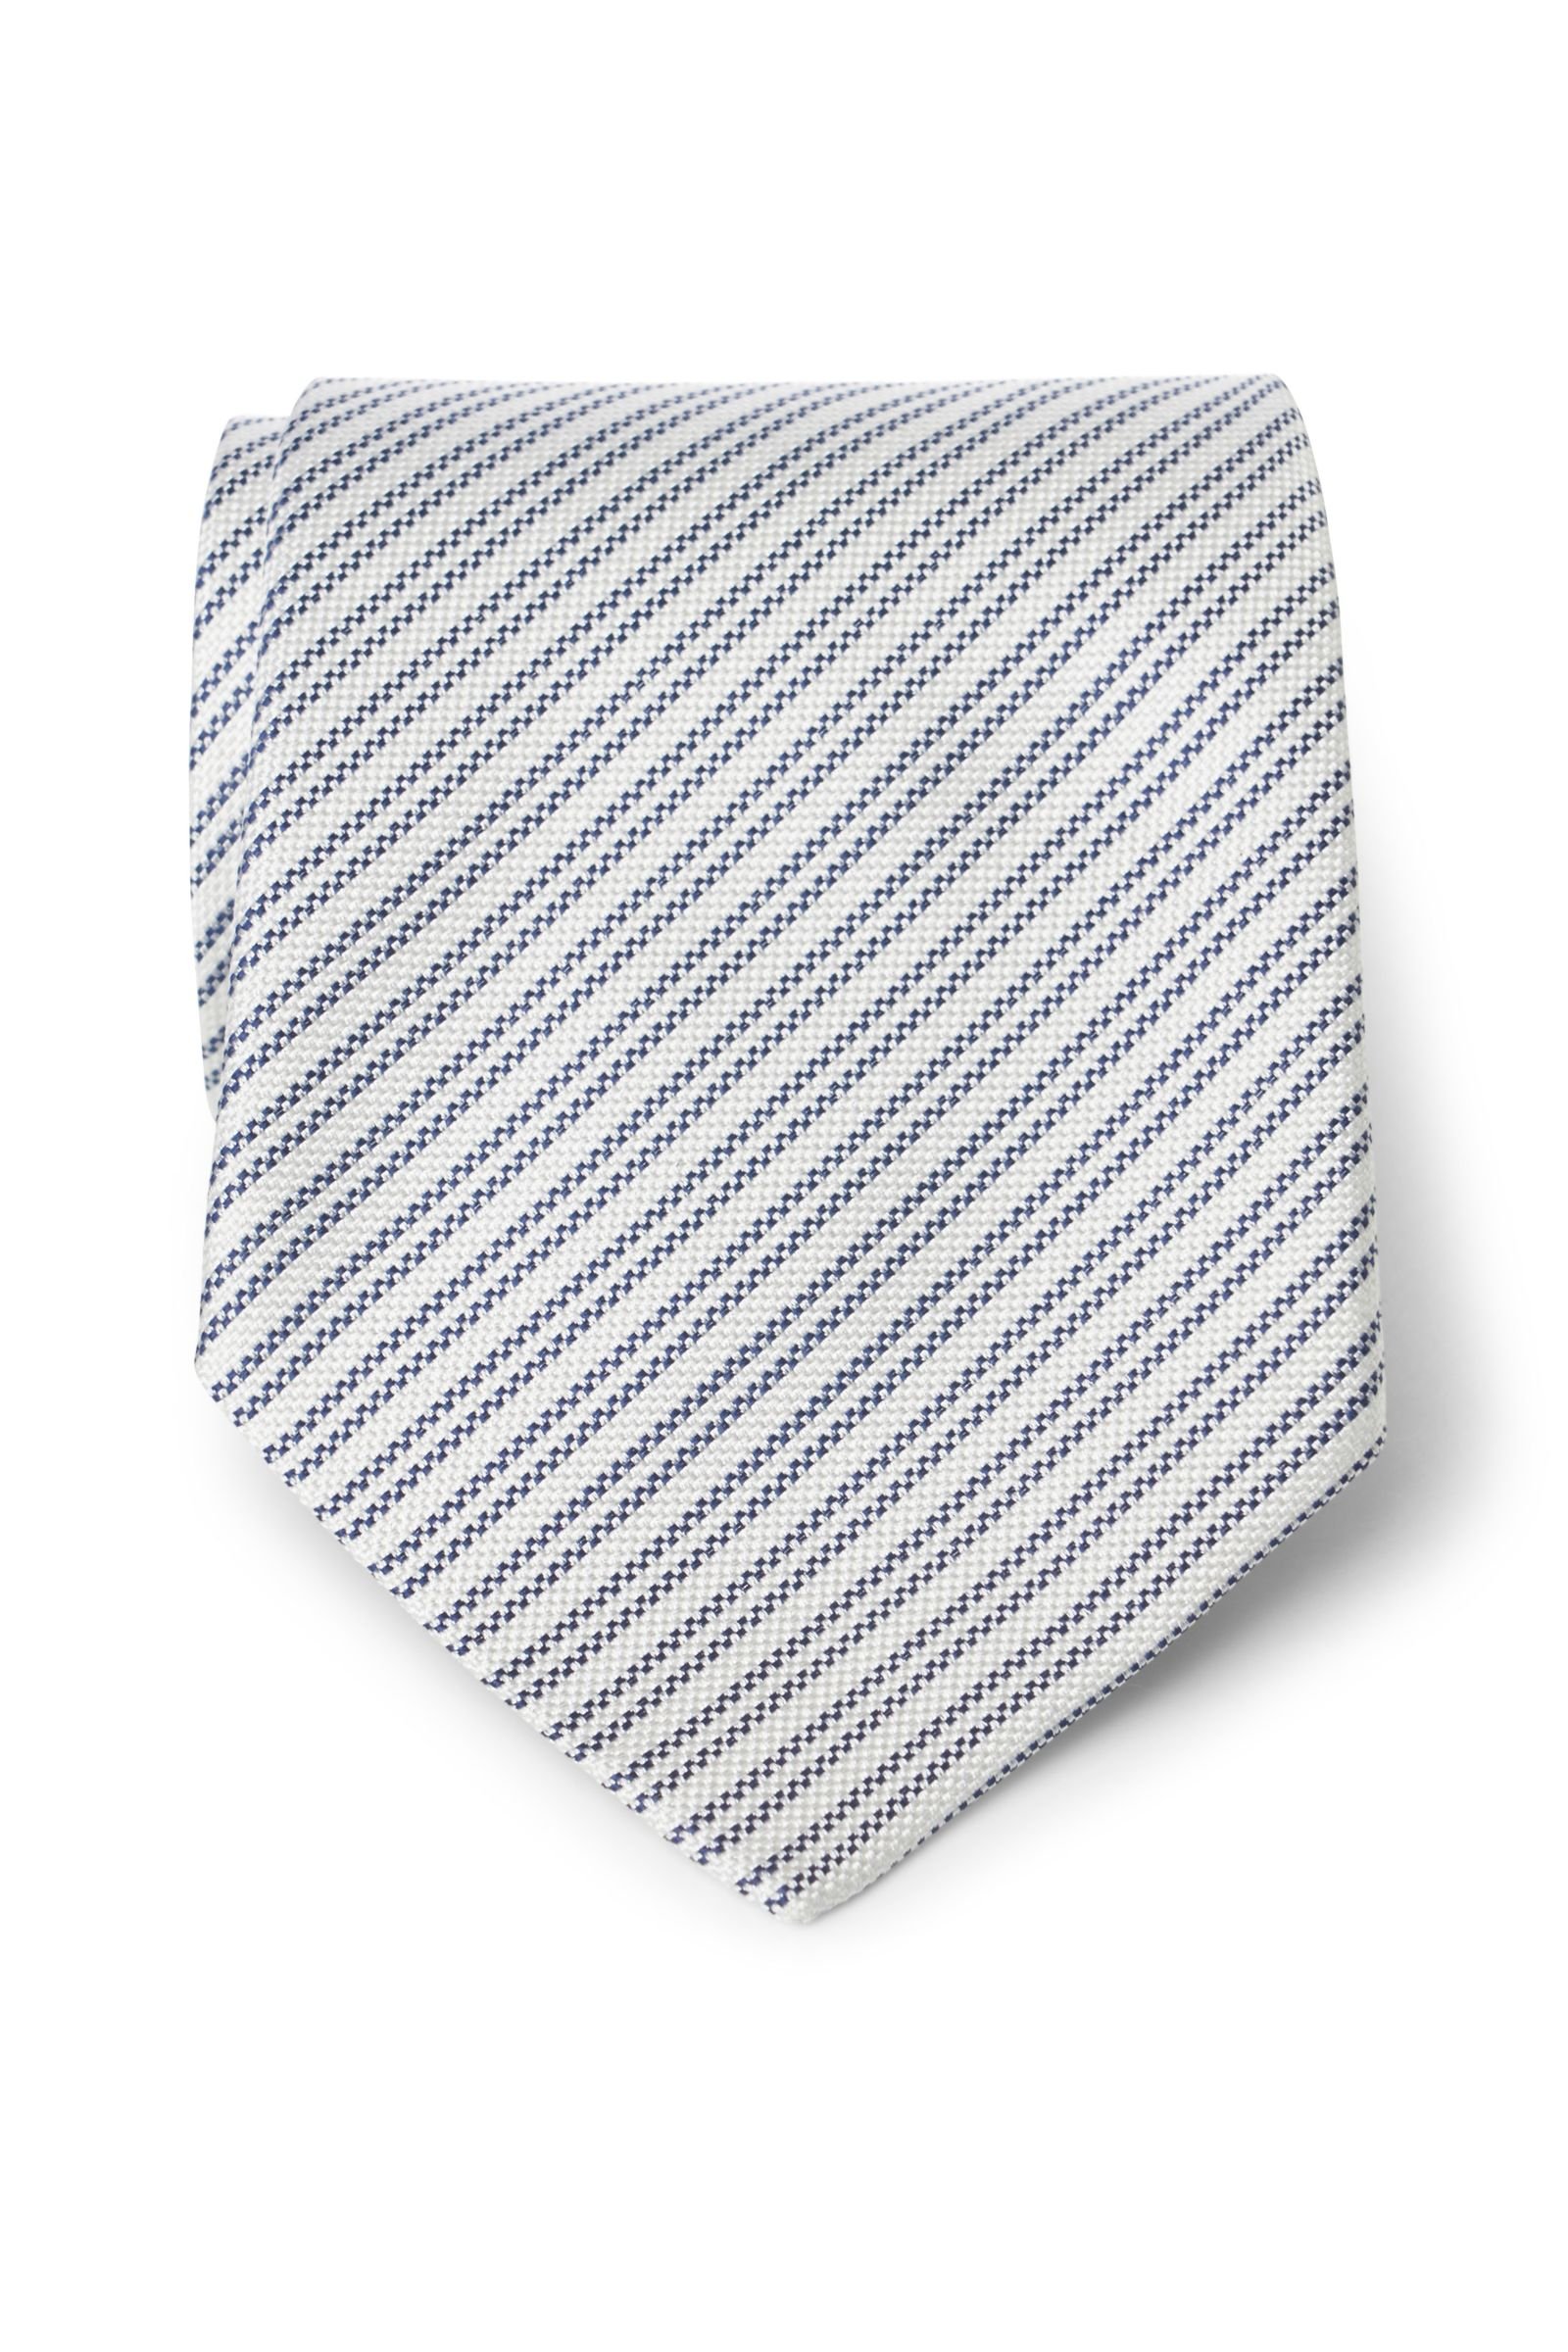 Silk tie dark blue striped